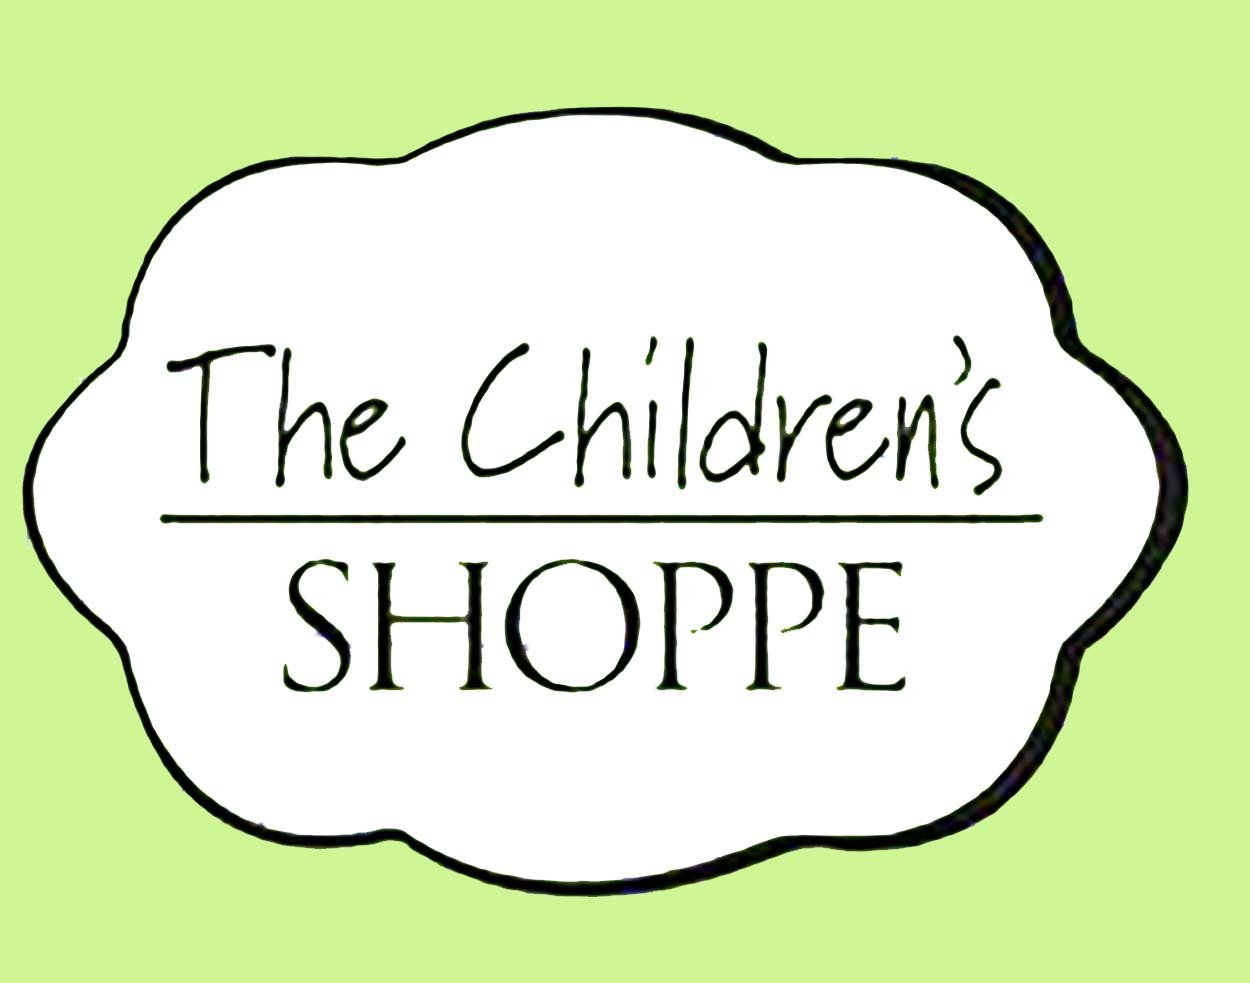 The Children's Shoppe.jpg